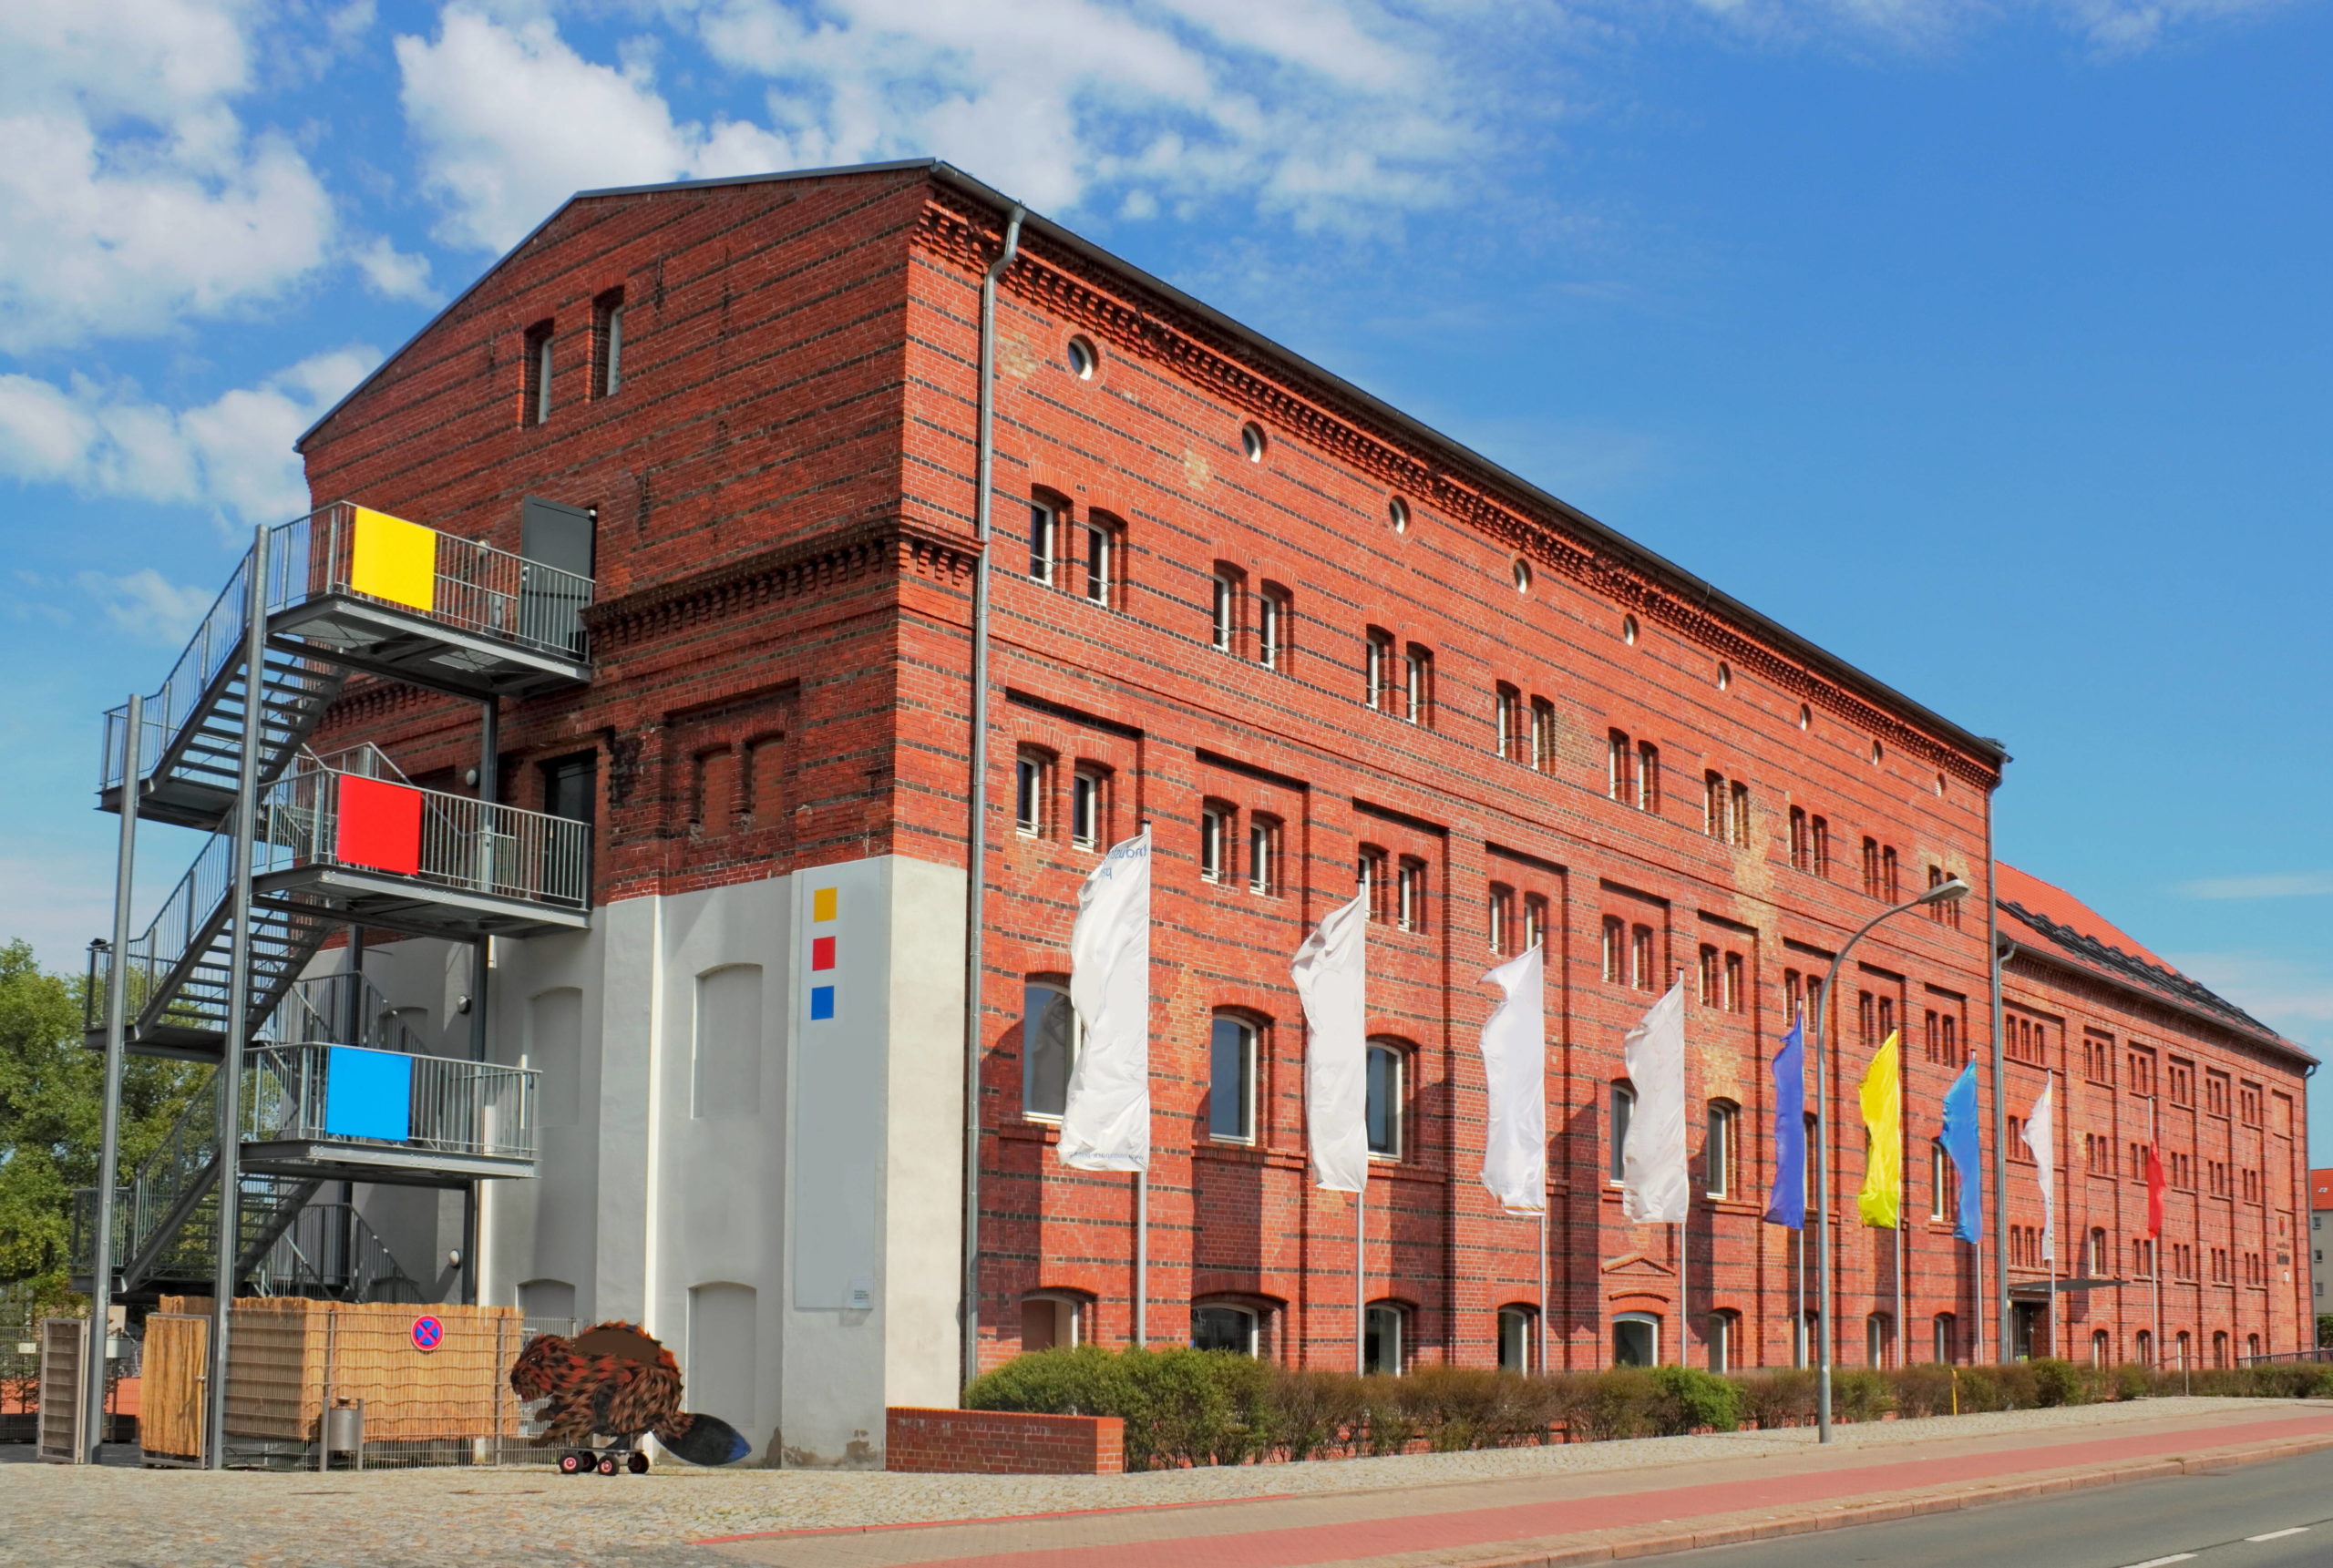 Industriegeschichte in Brandenburg 1801 konnte man Brillen erstmals fabrikmäßig herstellen. Das Optik Industrie Museum Rathenow schenkt Einblicke in die Entwicklung.